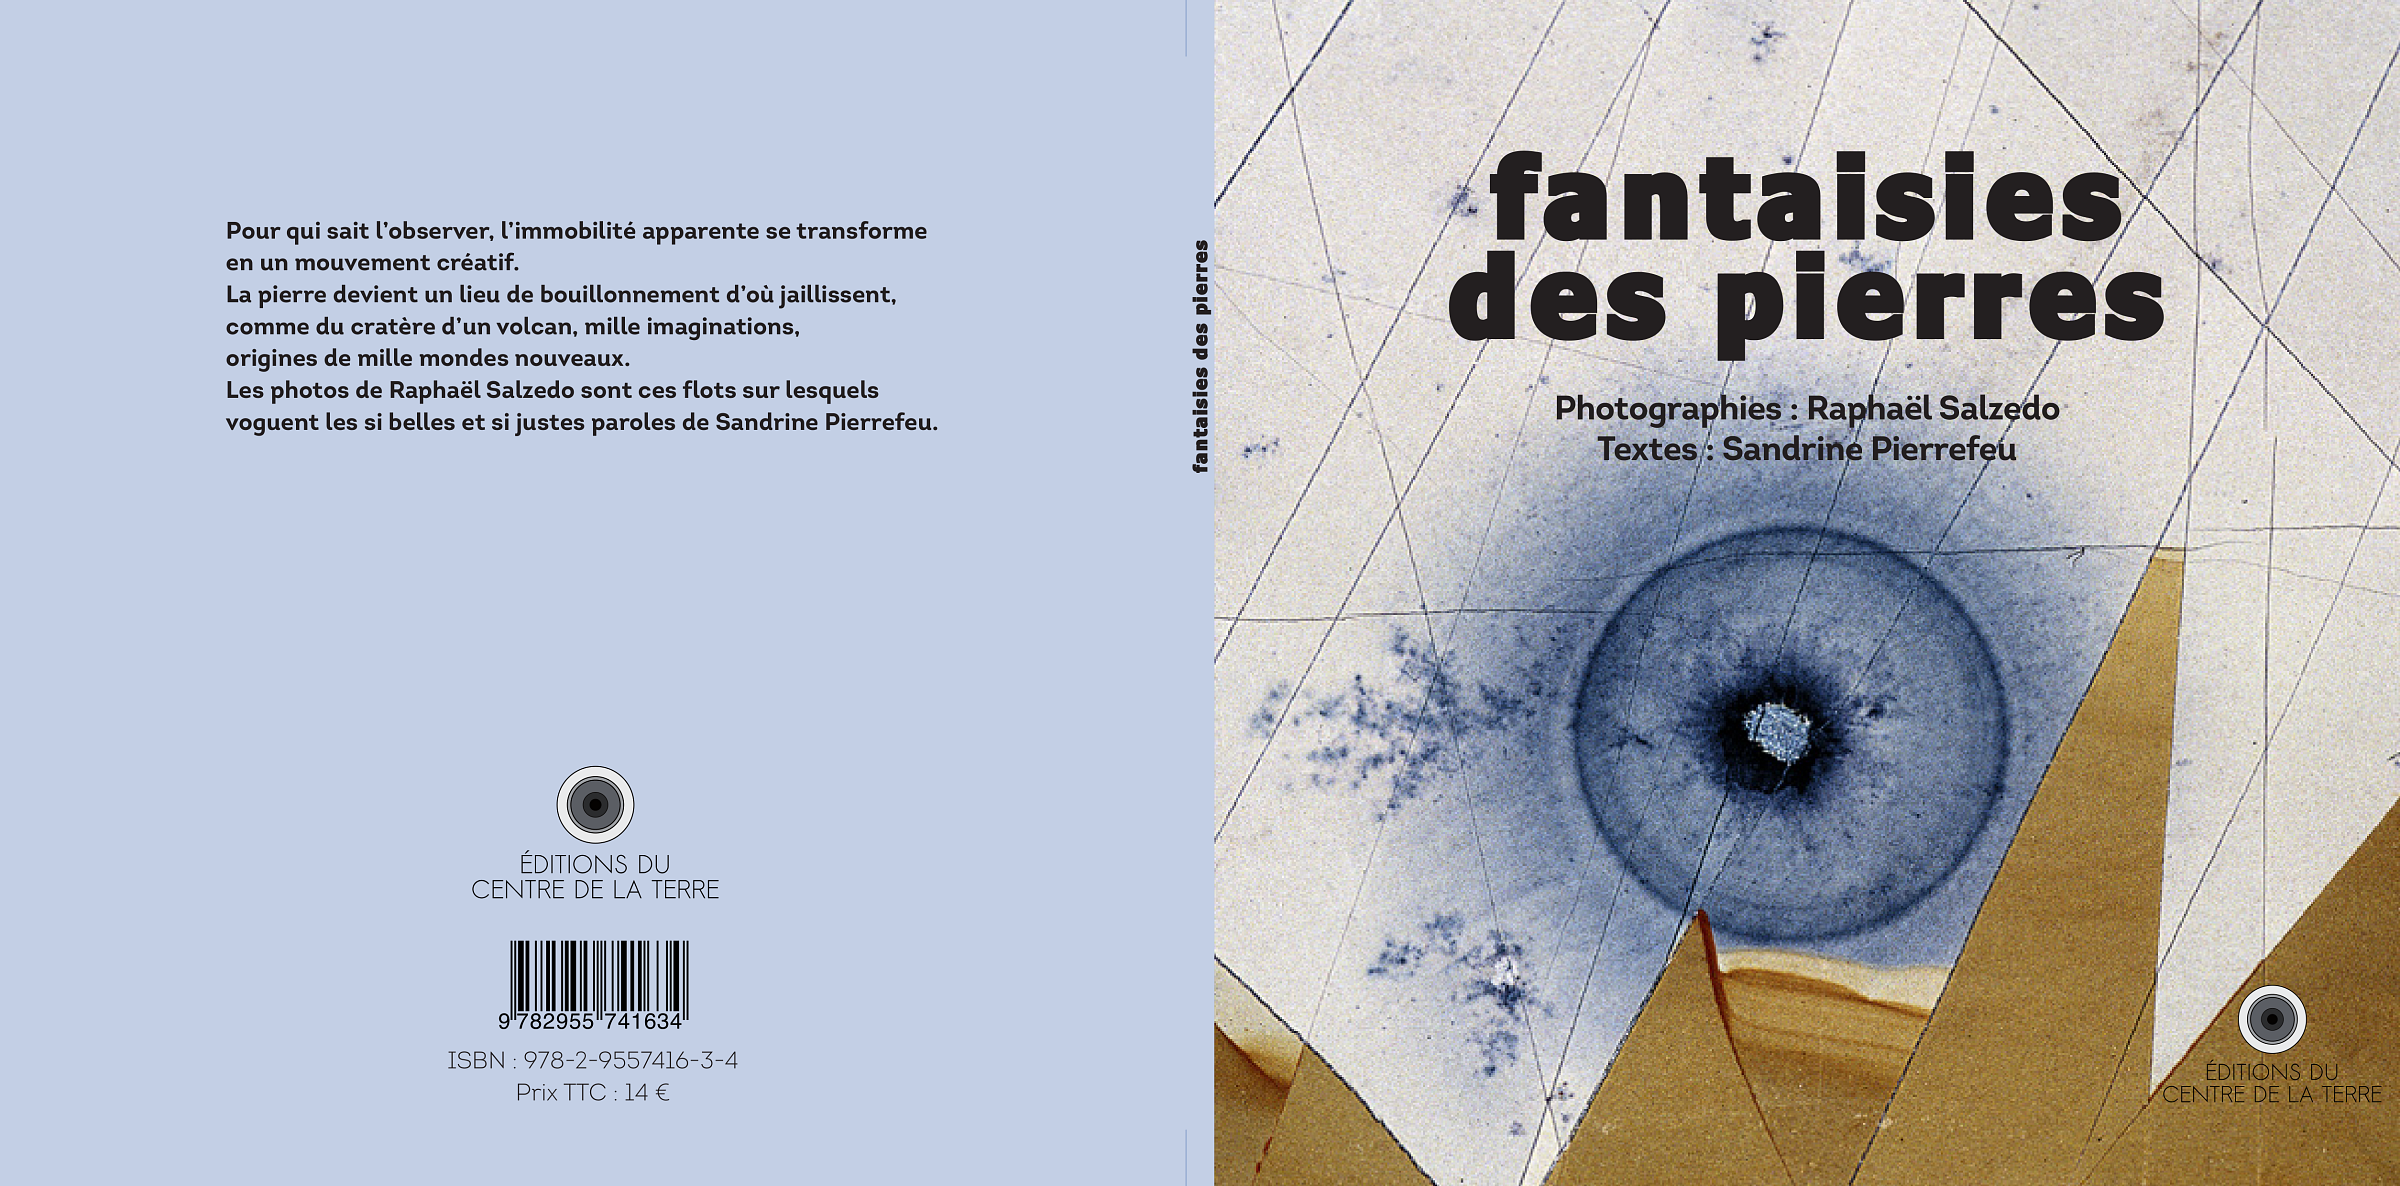 Couverture et quatrième de couverture du livre "Fantaisies de pierres"